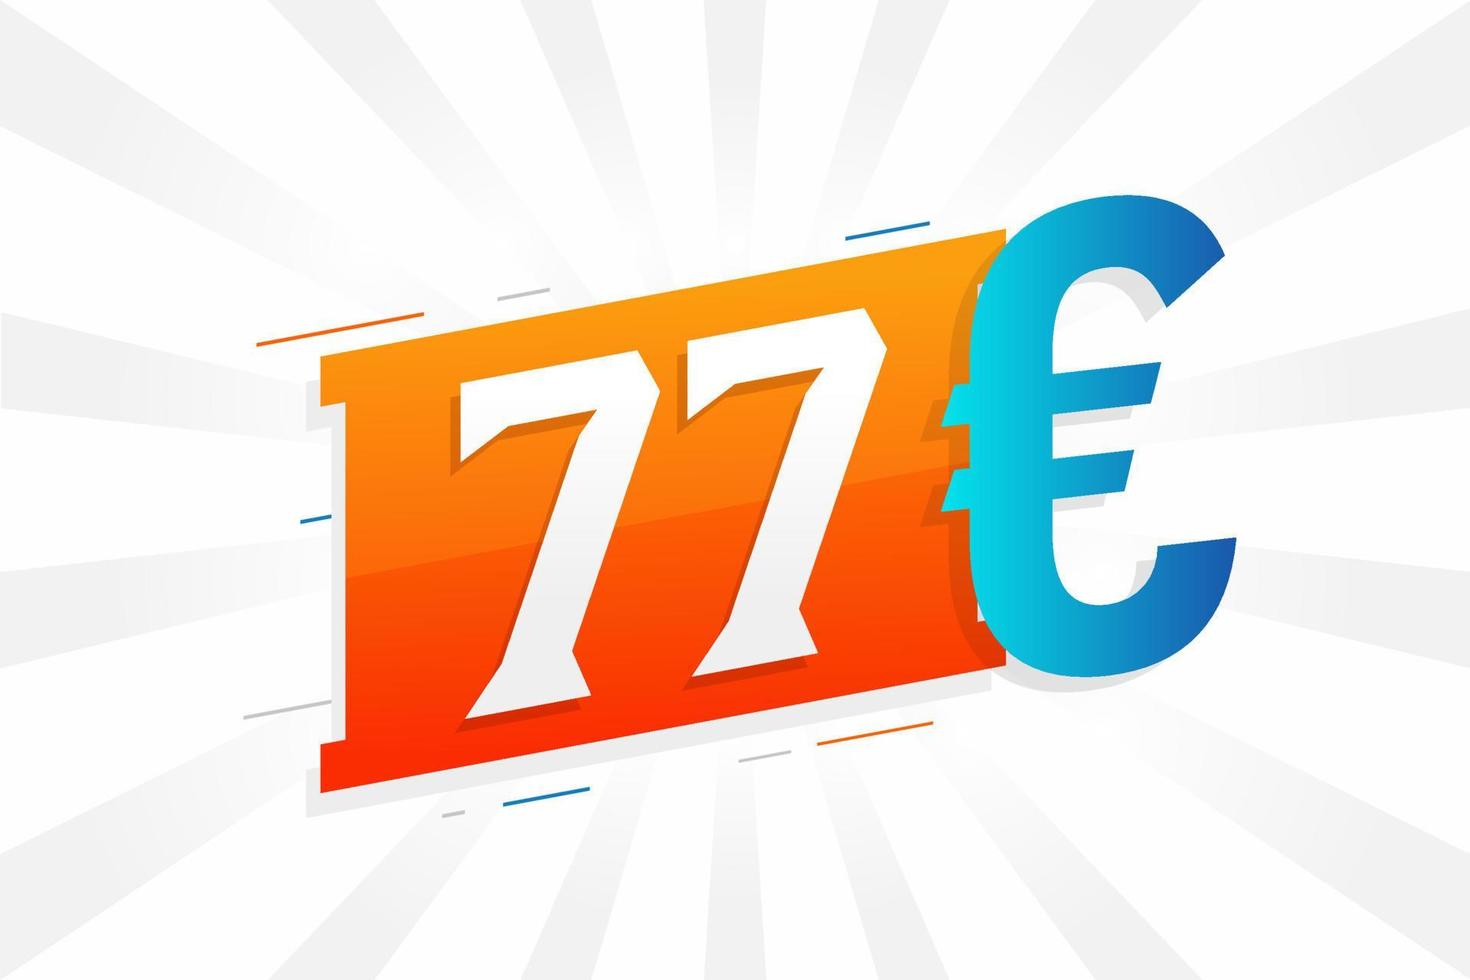 símbolo de texto de vetor de moeda de 77 euros. vetor de estoque de dinheiro da união europeia de 77 euros